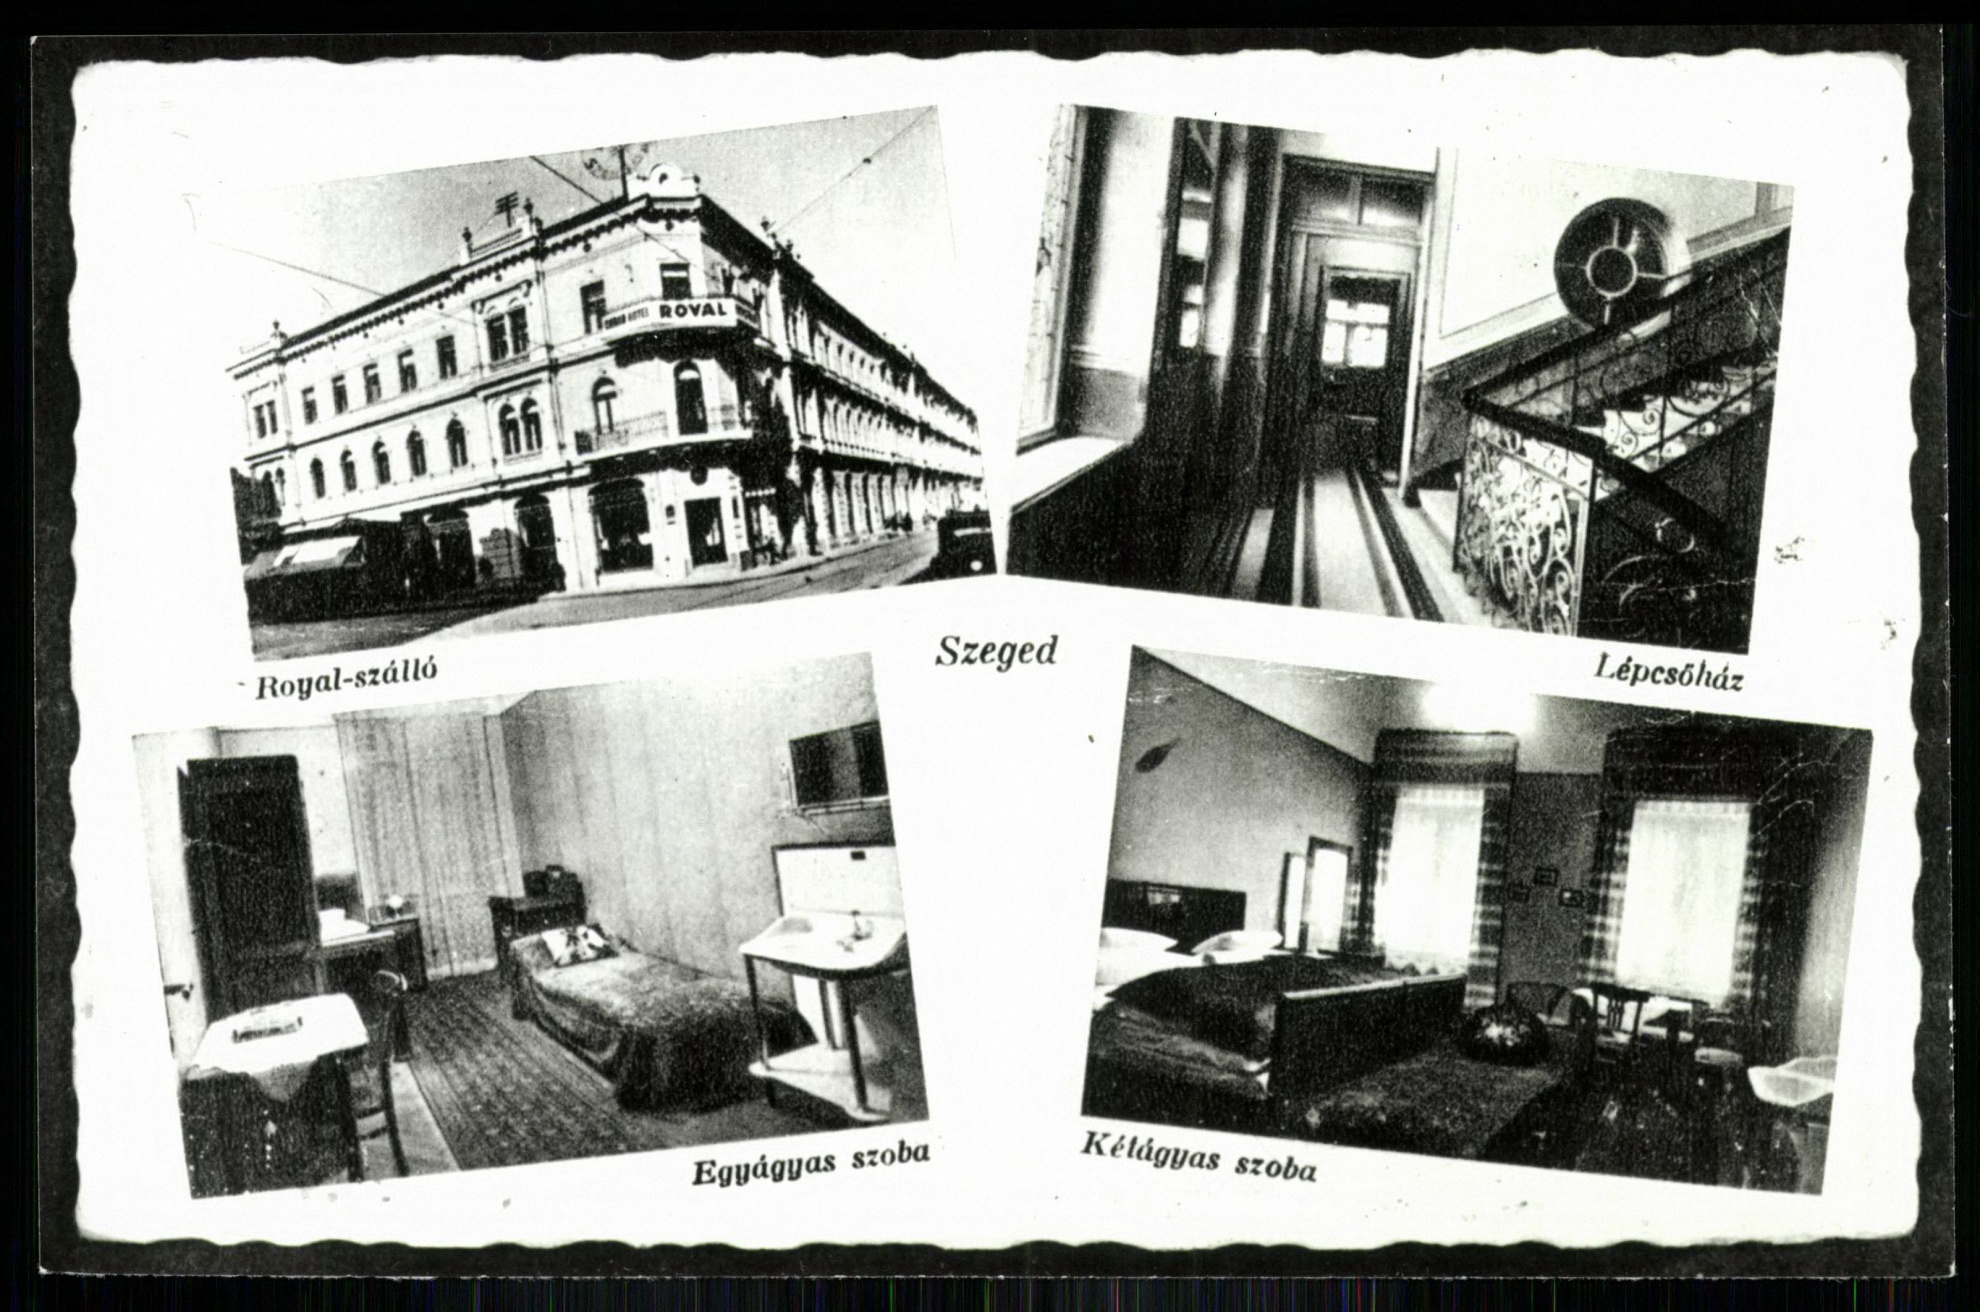 Szeged Royal szálló, Lépcsőház, Egyágyas szoba, Kétágyas szoba (Magyar Kereskedelmi és Vendéglátóipari Múzeum CC BY-NC-ND)